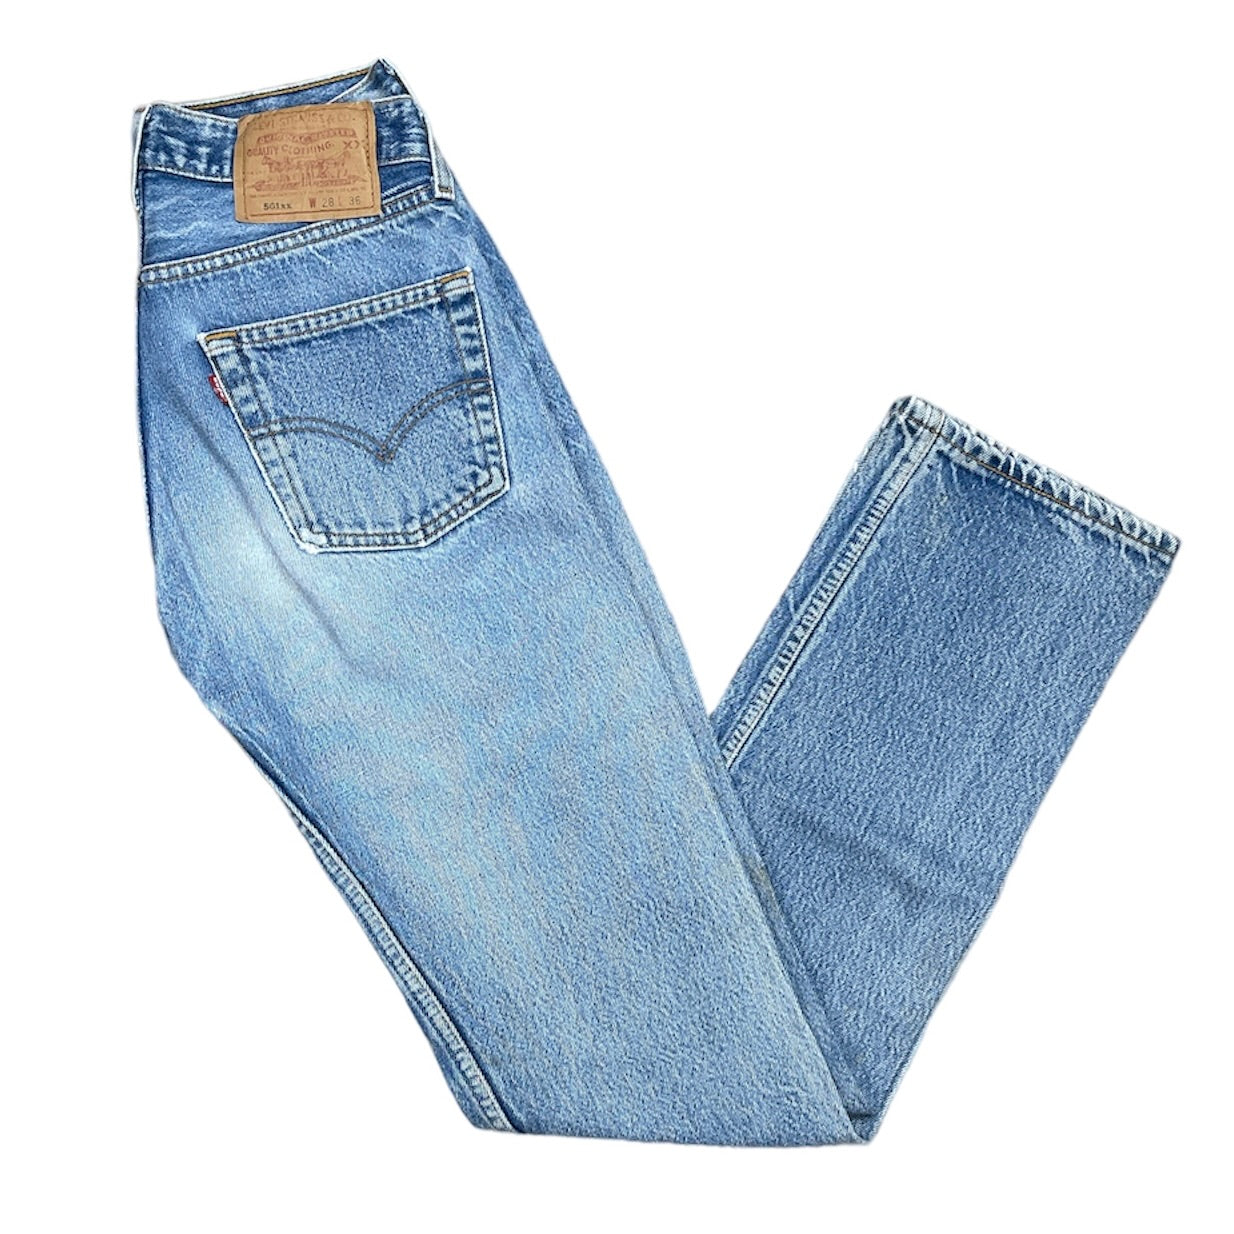 Vintage Levis 501 Blue Jeans (W28/L36)